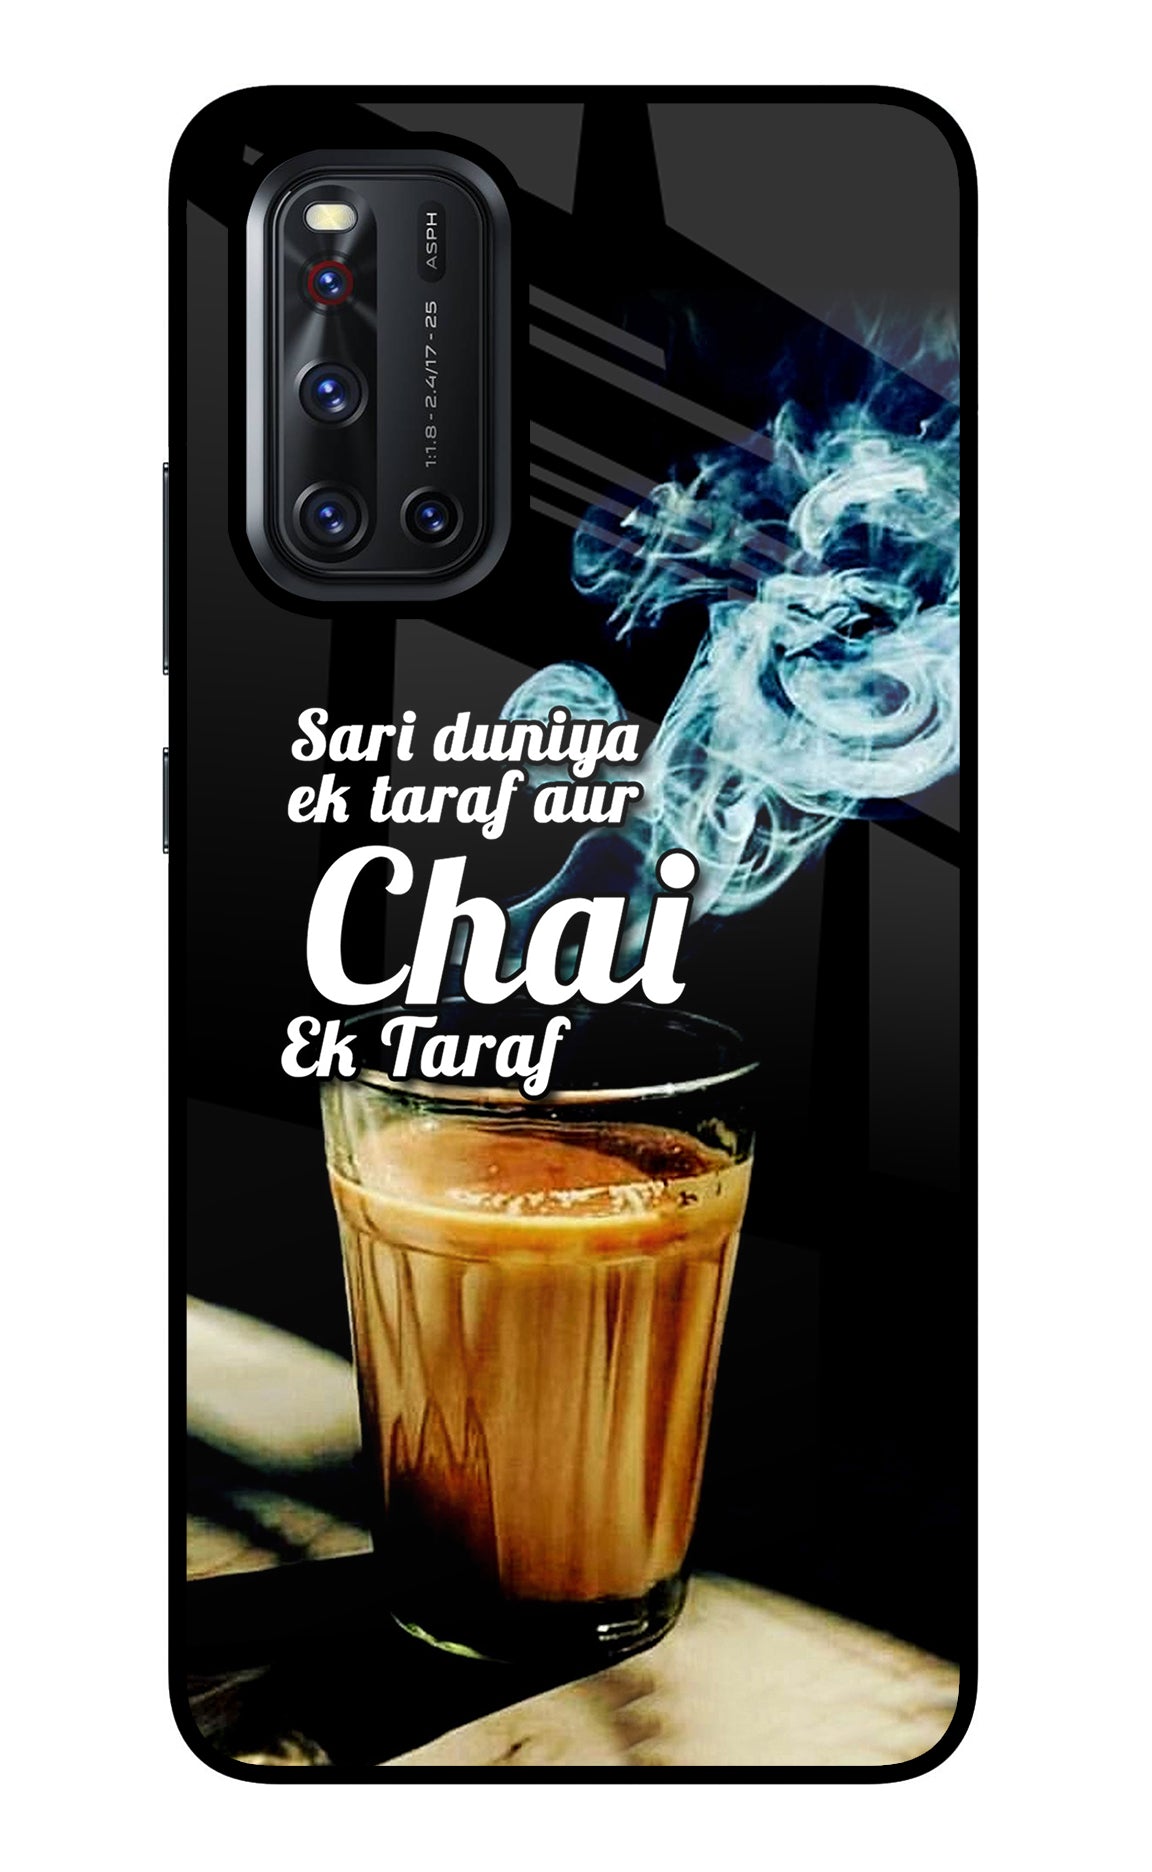 Chai Ek Taraf Quote Vivo V19 Glass Case